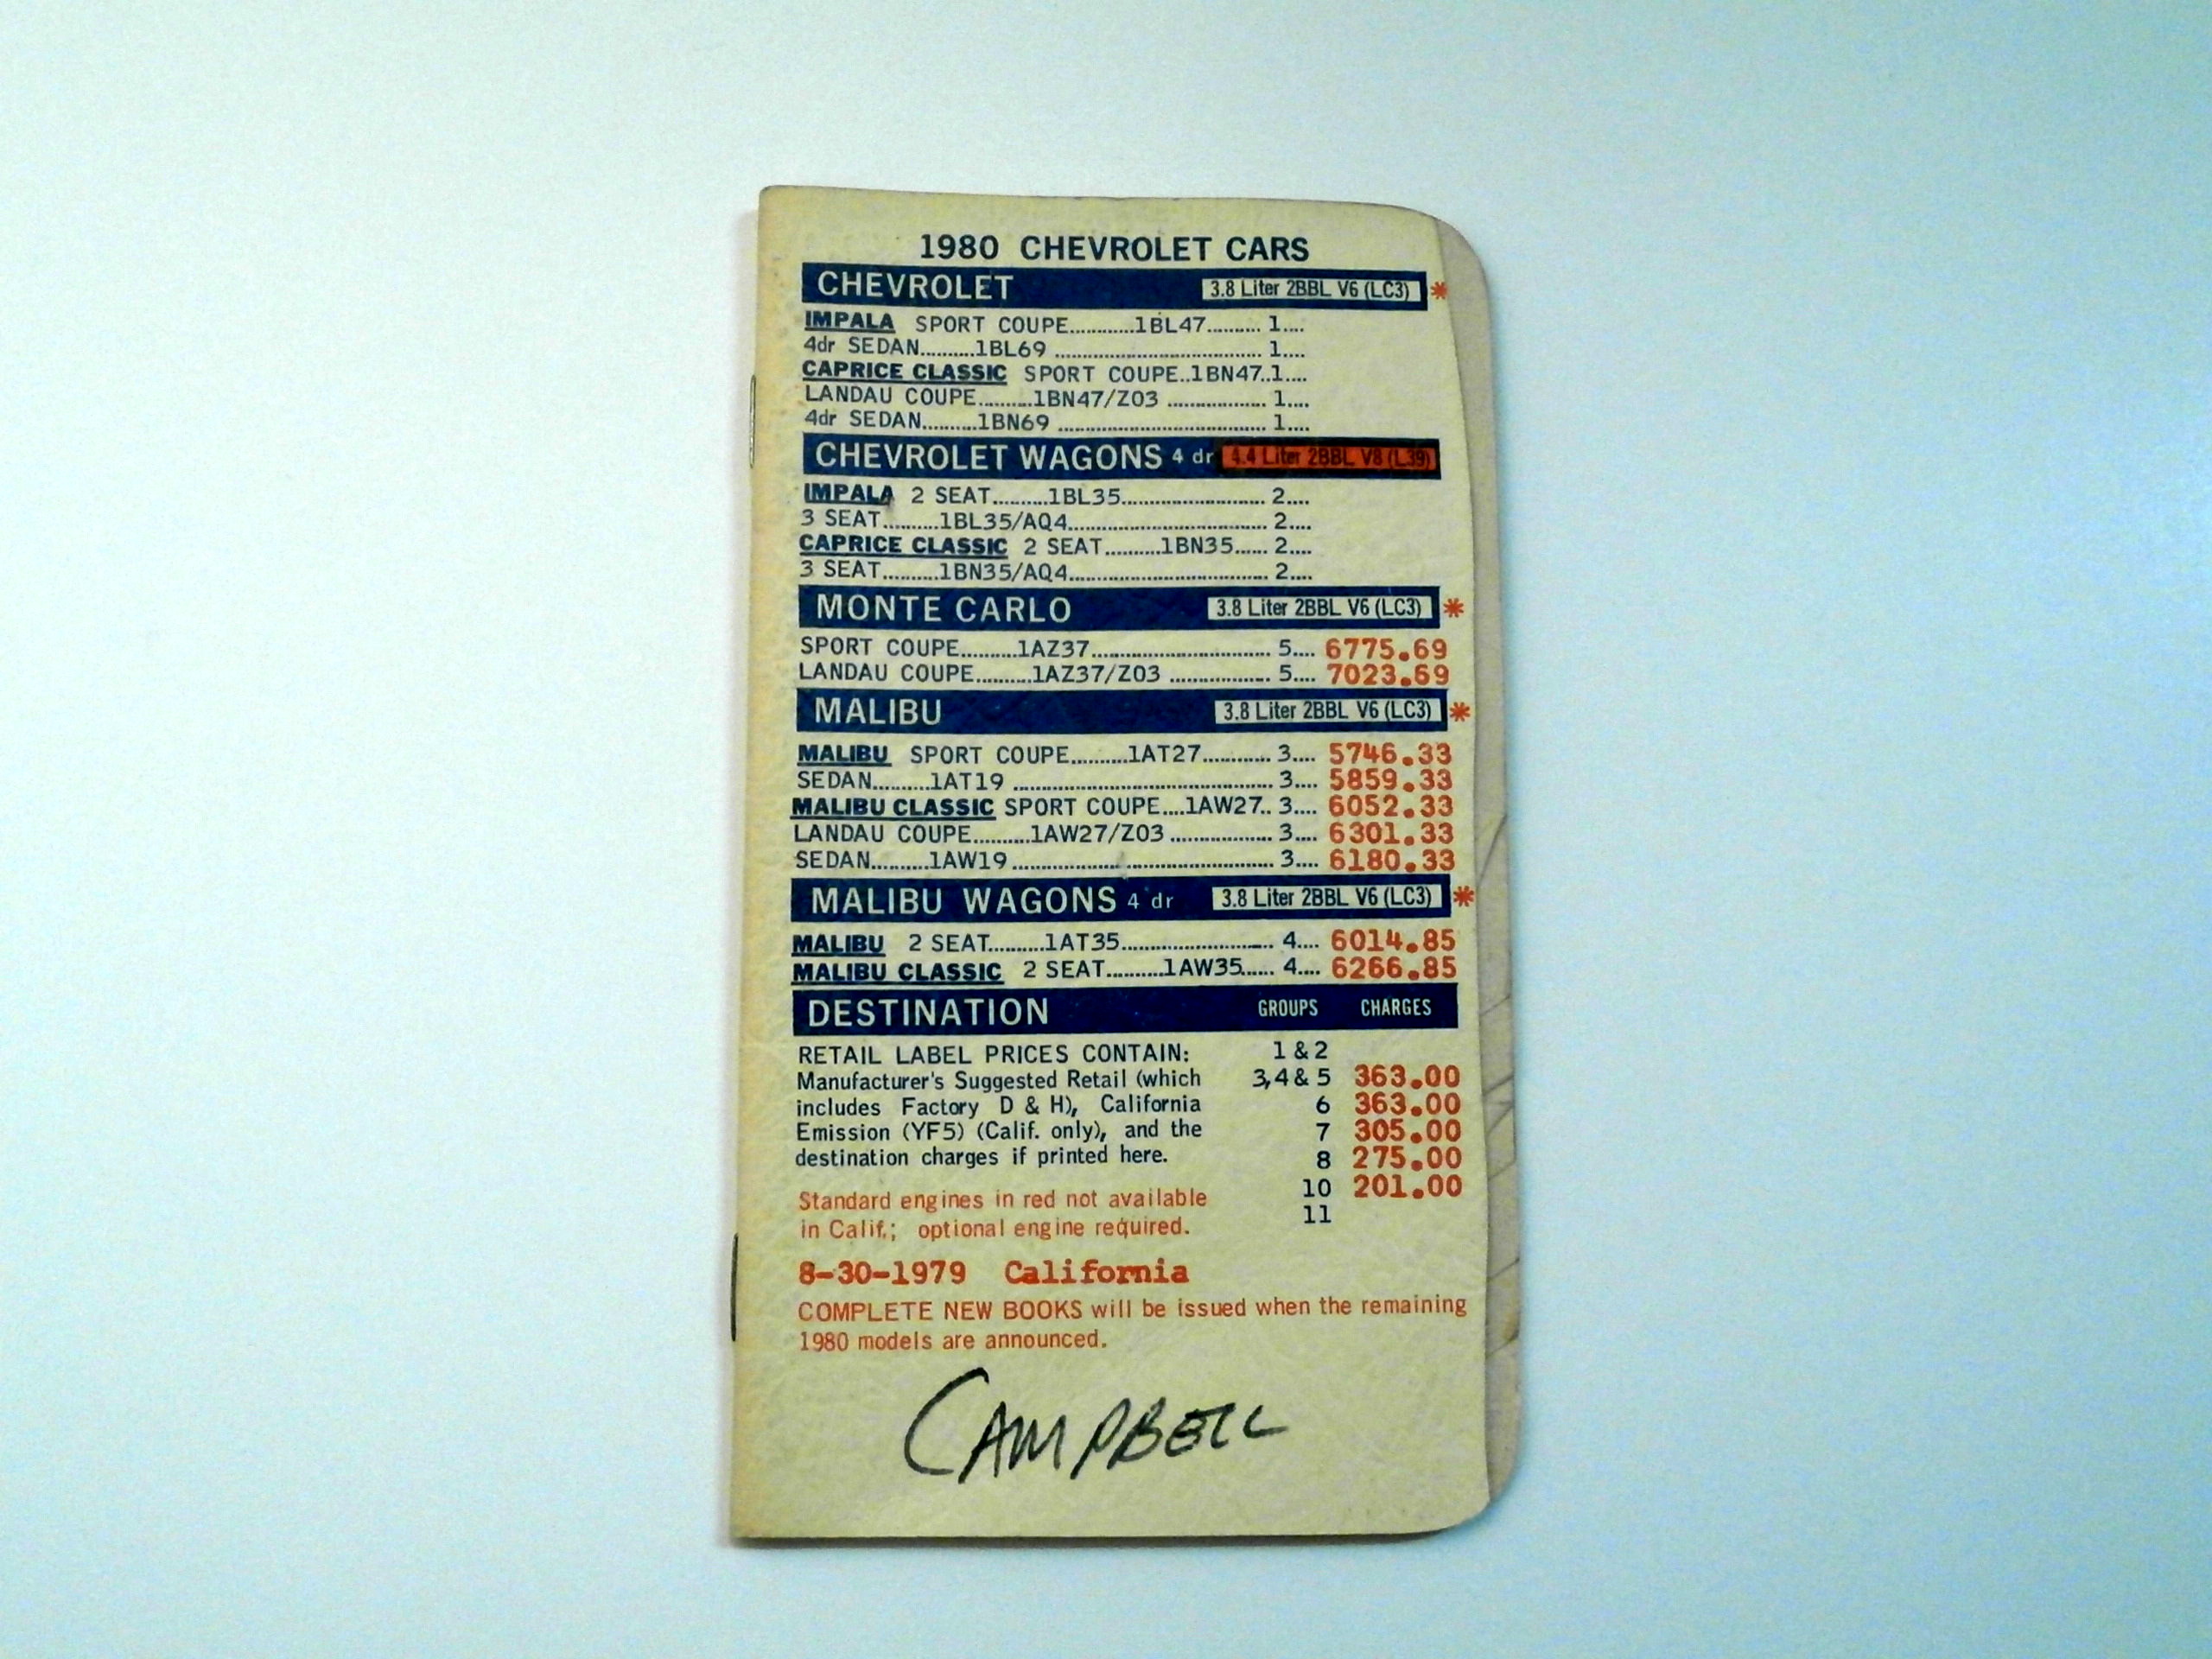 1980 Chevrolet Salesman Data Spec Book Corvette Camaro Chevelle Etc. - Click Image to Close